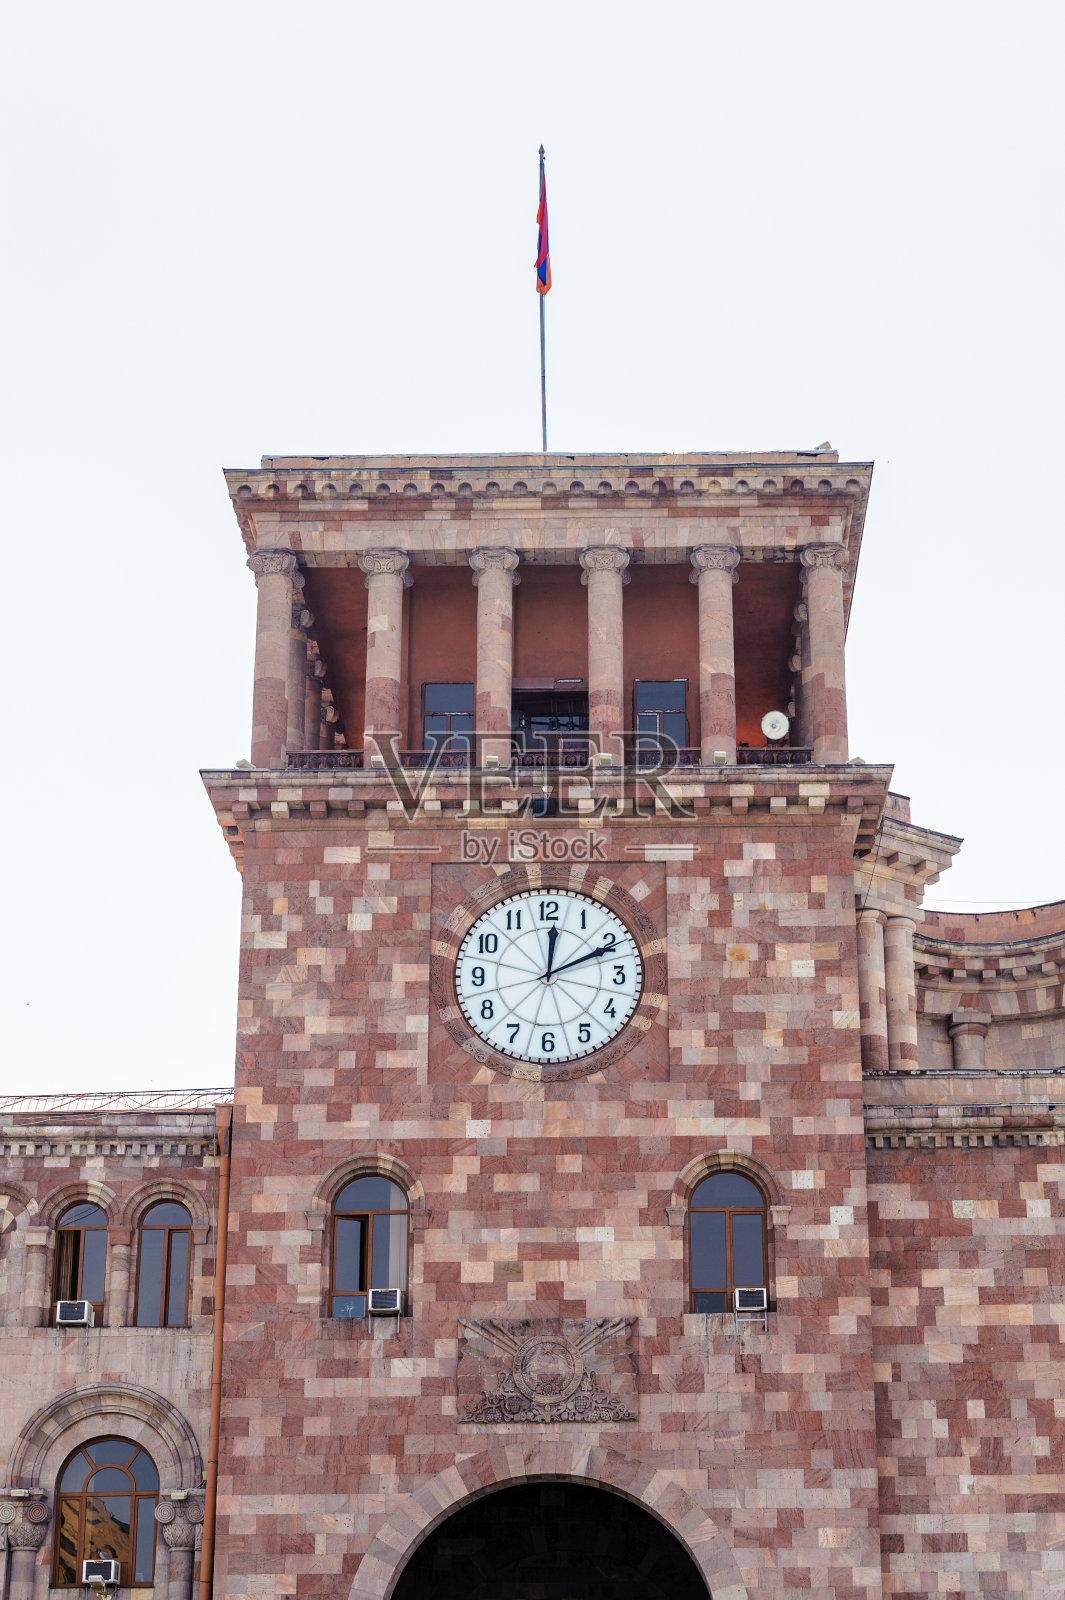 位于共和国广场中心的政府屋。共和国广场是亚美尼亚首都埃里温的主要广场照片摄影图片